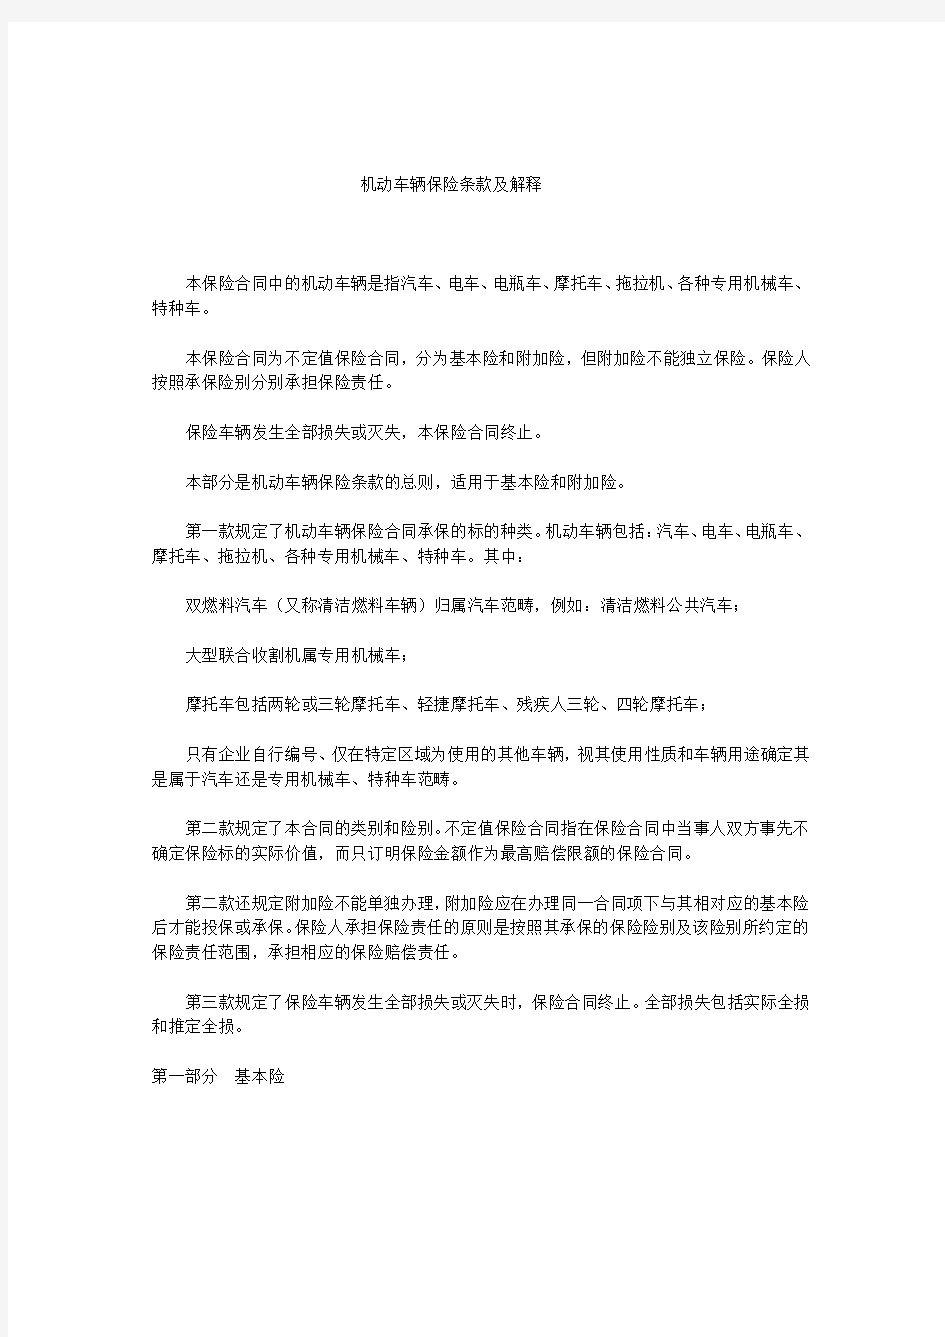 保监发[2000]102号中国保监会关于印发《机动车辆保险条款解释》